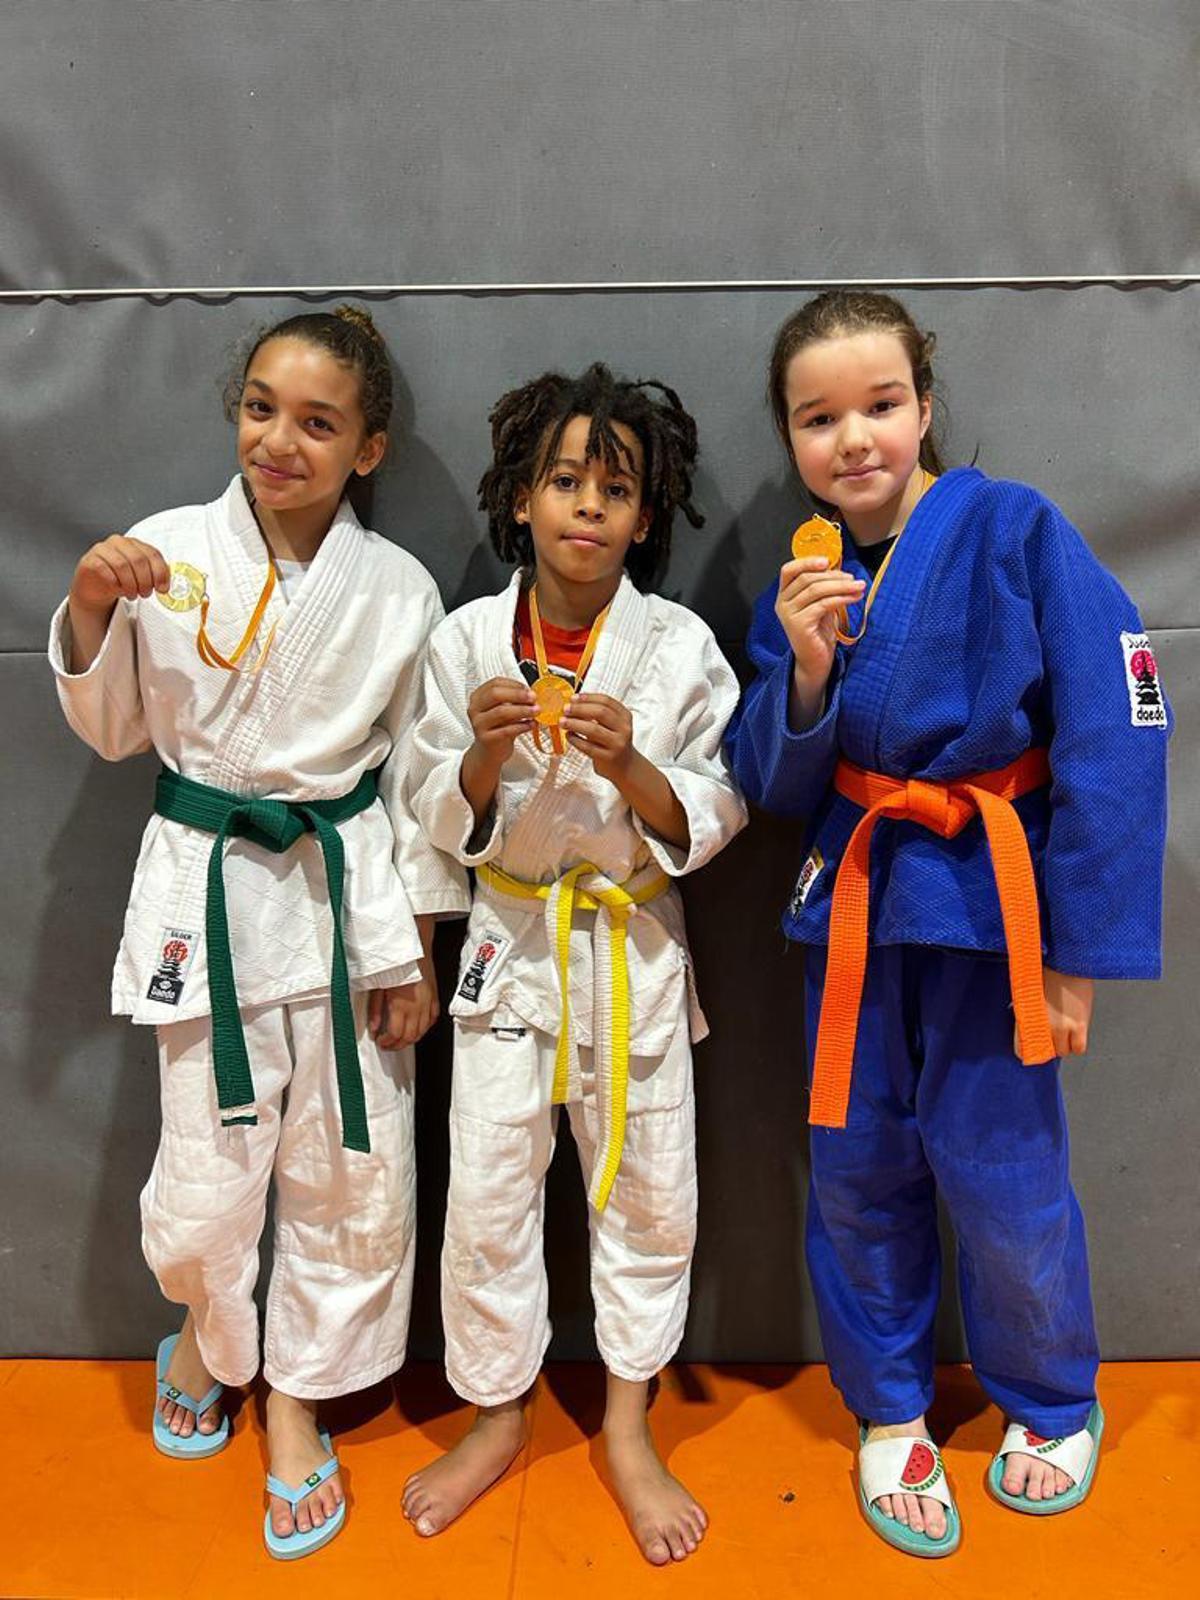 El judo sesrovirenc participa en un nou torneig d’interclubs i guanya quatre medalles